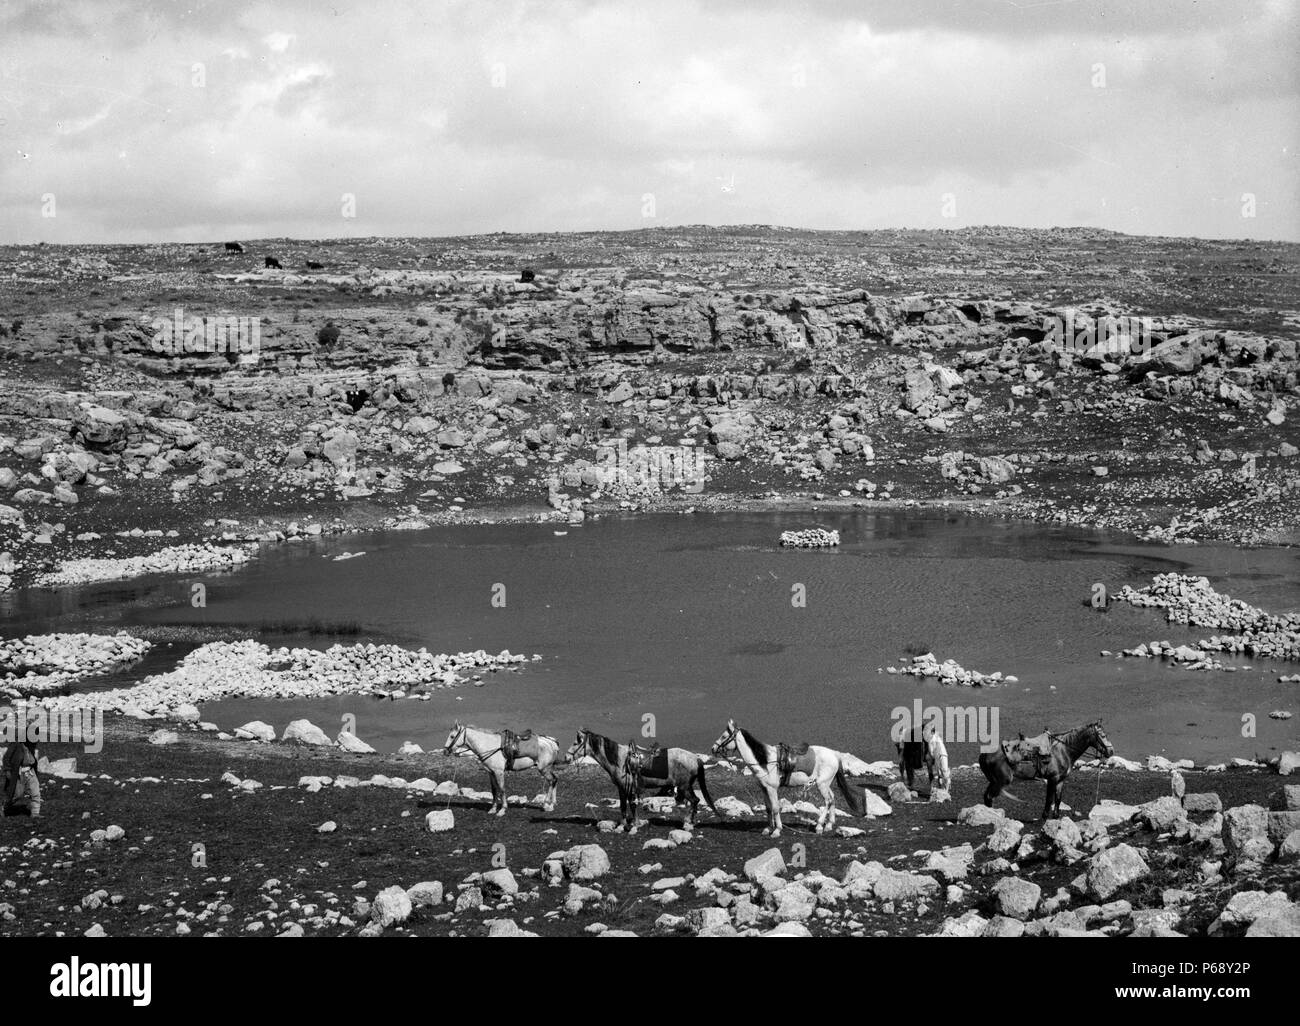 Photographie de l'Al-Karmil village de Palestine. Situé près d'Hébron, sud de la Cisjordanie. Datée 1920 Banque D'Images